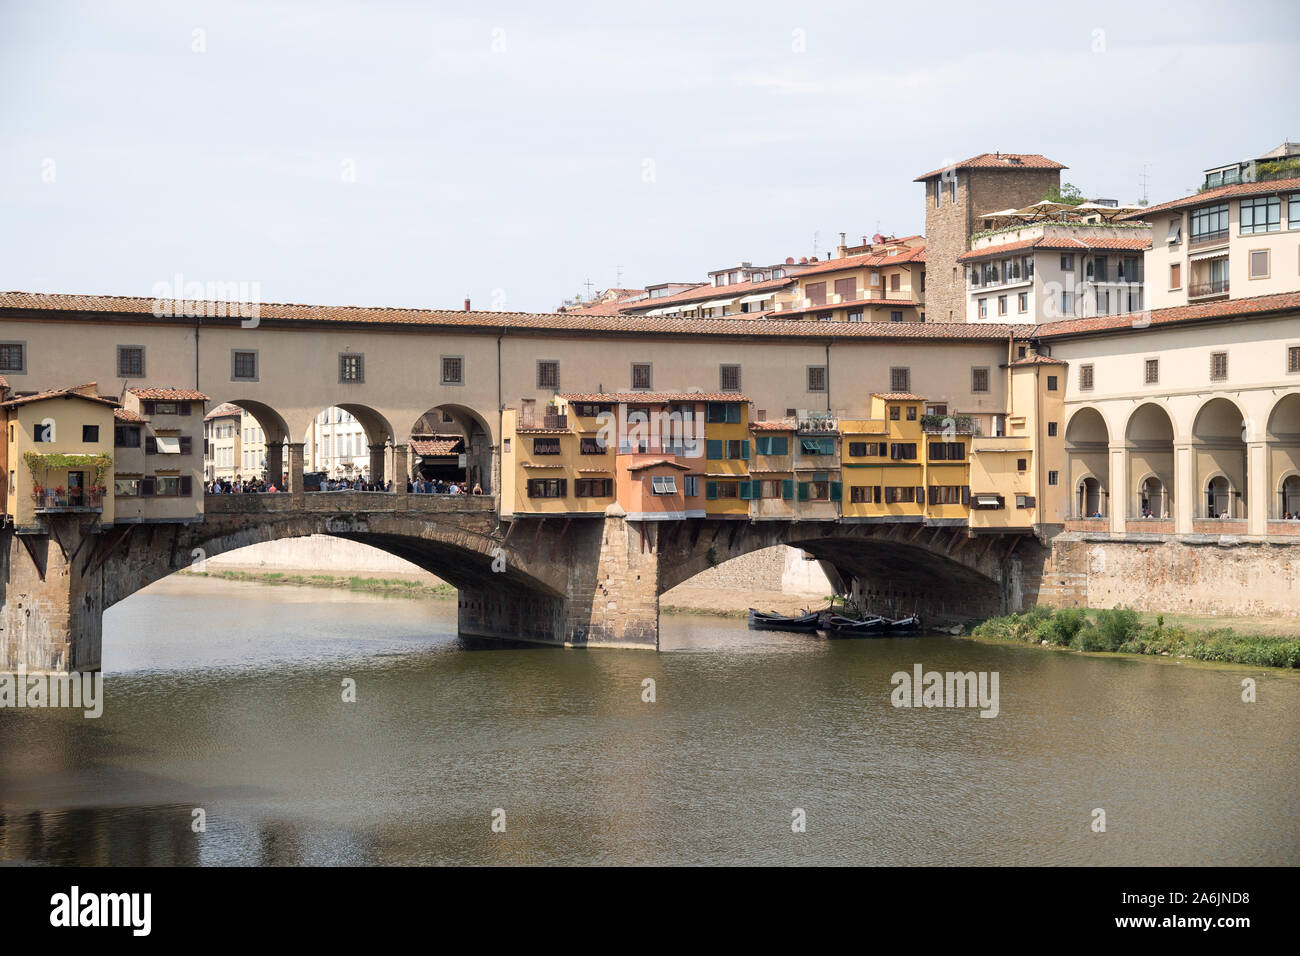 Ponte Vecchio (Old Bridge) with Corridoio Vasariano (Vasari Corridor) and Torre dei Consorti in Historic Centre of Firenze listed World Heritage by UN Stock Photo